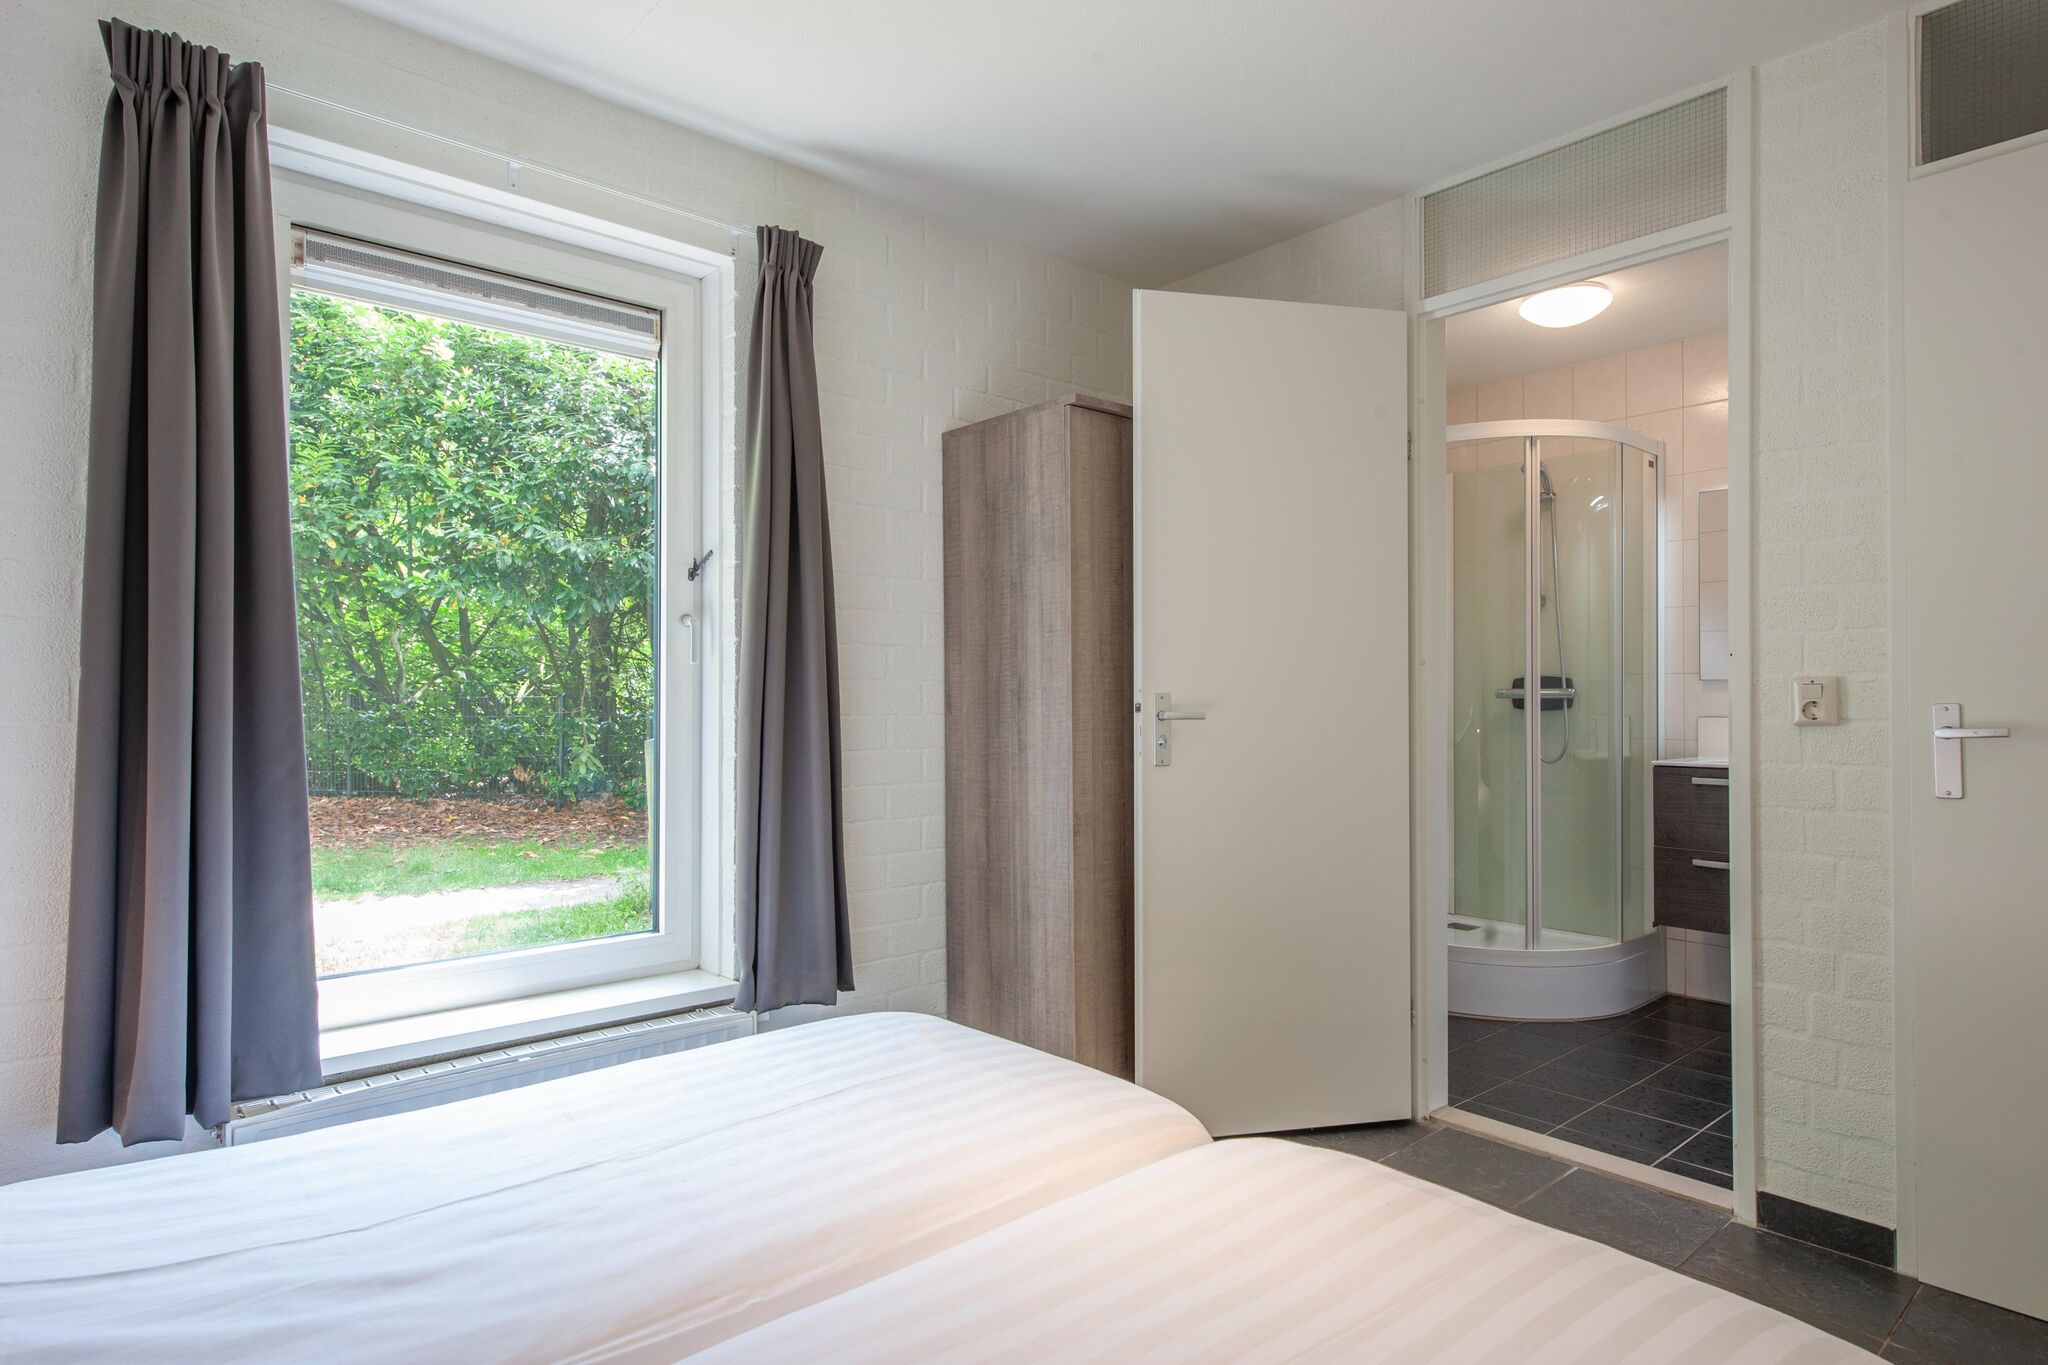 Maison de vacances restylée avec 5 salles de bains près de la Vrachelse Heide.